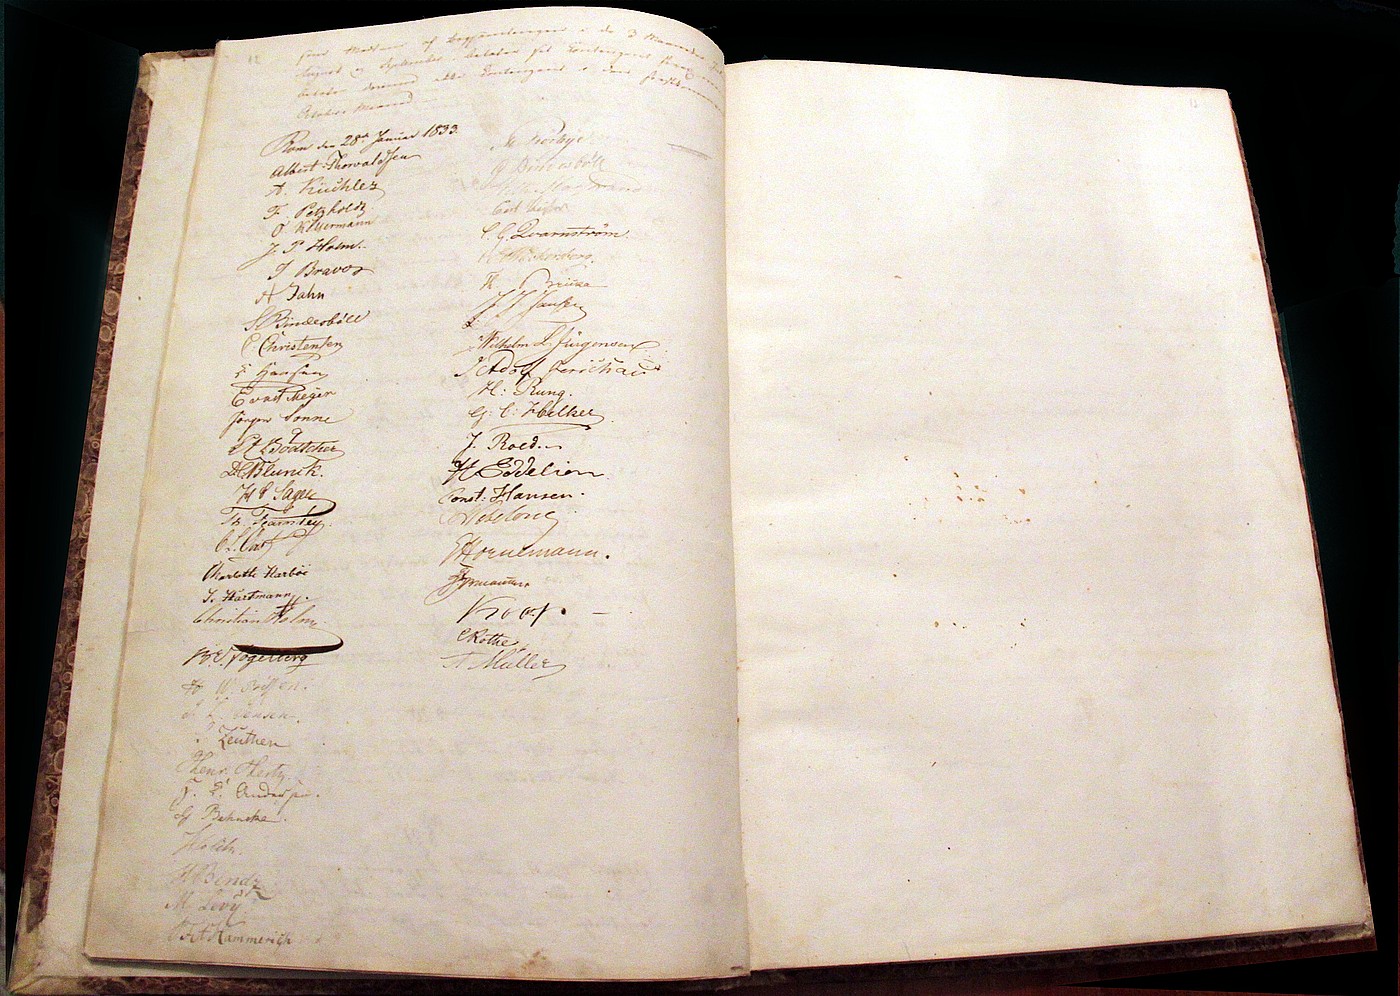 Thorvaldsens signatur ved stiftelsen af Skandinavisk Forening i Rom, 28.1.1833